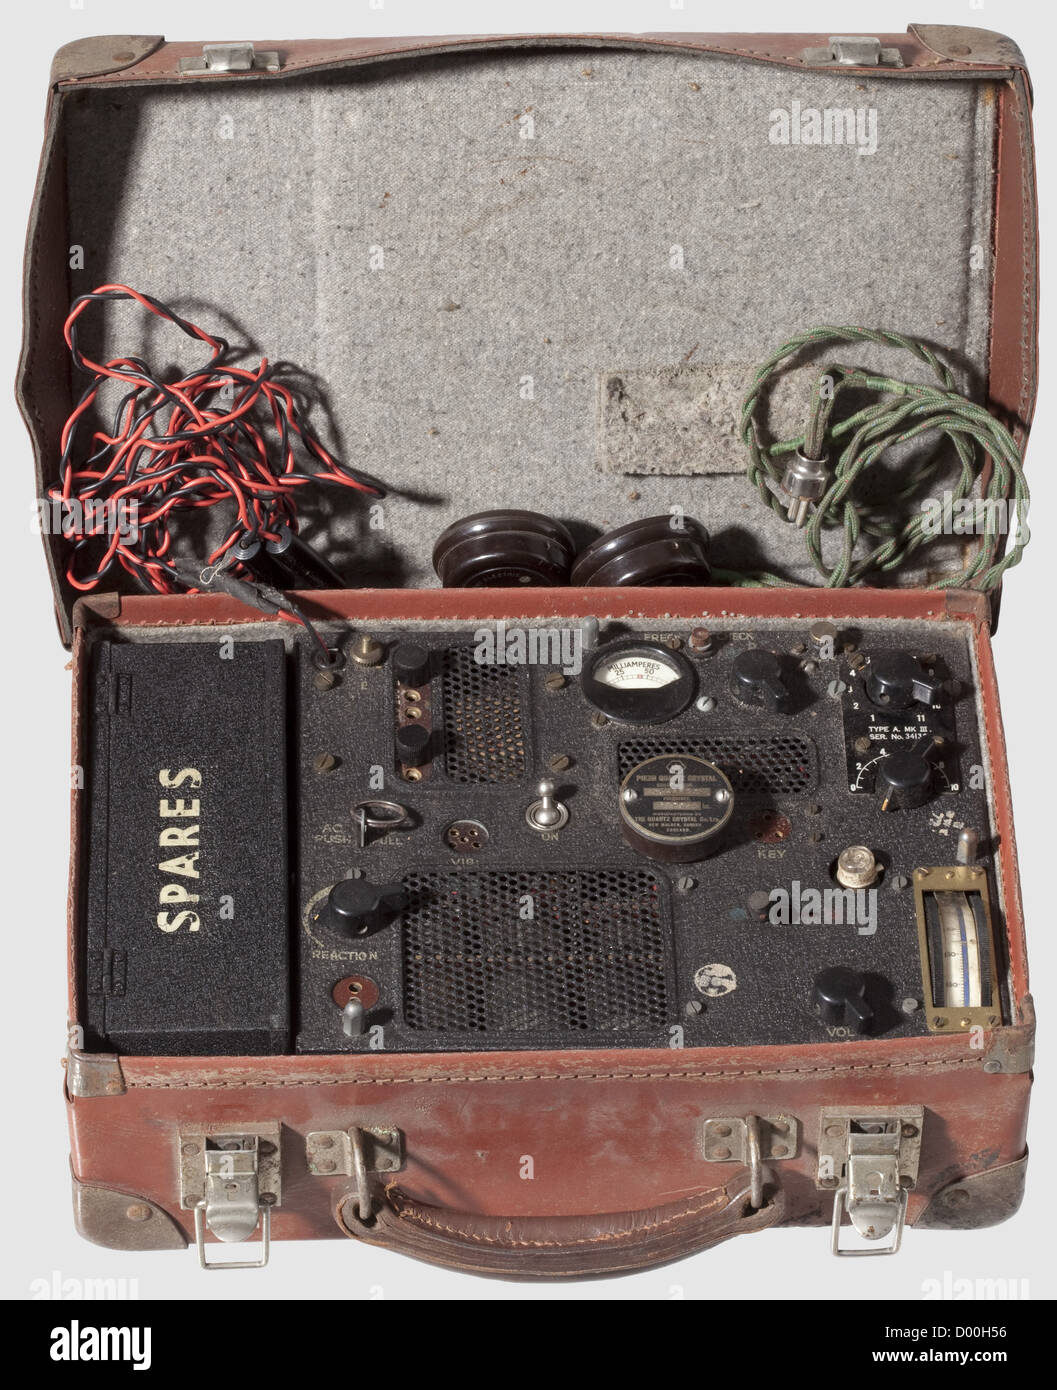 Ein Spionagefadio 'Typ A MK. III,',SER. Nr. 34136 der britischen Sonderoperation Executive (SOE) aus dem Zweiten Weltkrieg. Bestehend aus Sender-Empfänger, einer 'Spares Box' (mit einer Glühbirne, zwei 'Crystal Unit(s)', 'W&W Vibrator 6 Volt Typ NS/6', zwei Adaptern), Morse Key 'S.230/i.R.', Kopfhörer 'Multitone Electric Co. Ltd. London' (unvollständig) und einem 'Piezo Quarzkristall'. Mit zivilen Koffer und Original-Handbuch "Tragbare Transceiver Modell A MK. III“. Vollständigkeit und Funktionalität nicht getestet. Größe ca. 31 x 20 cm, Höhe 10 cm, historisch, historisch, 1930, Zusatzrechte-Clearences-nicht lieferbar Stockfoto